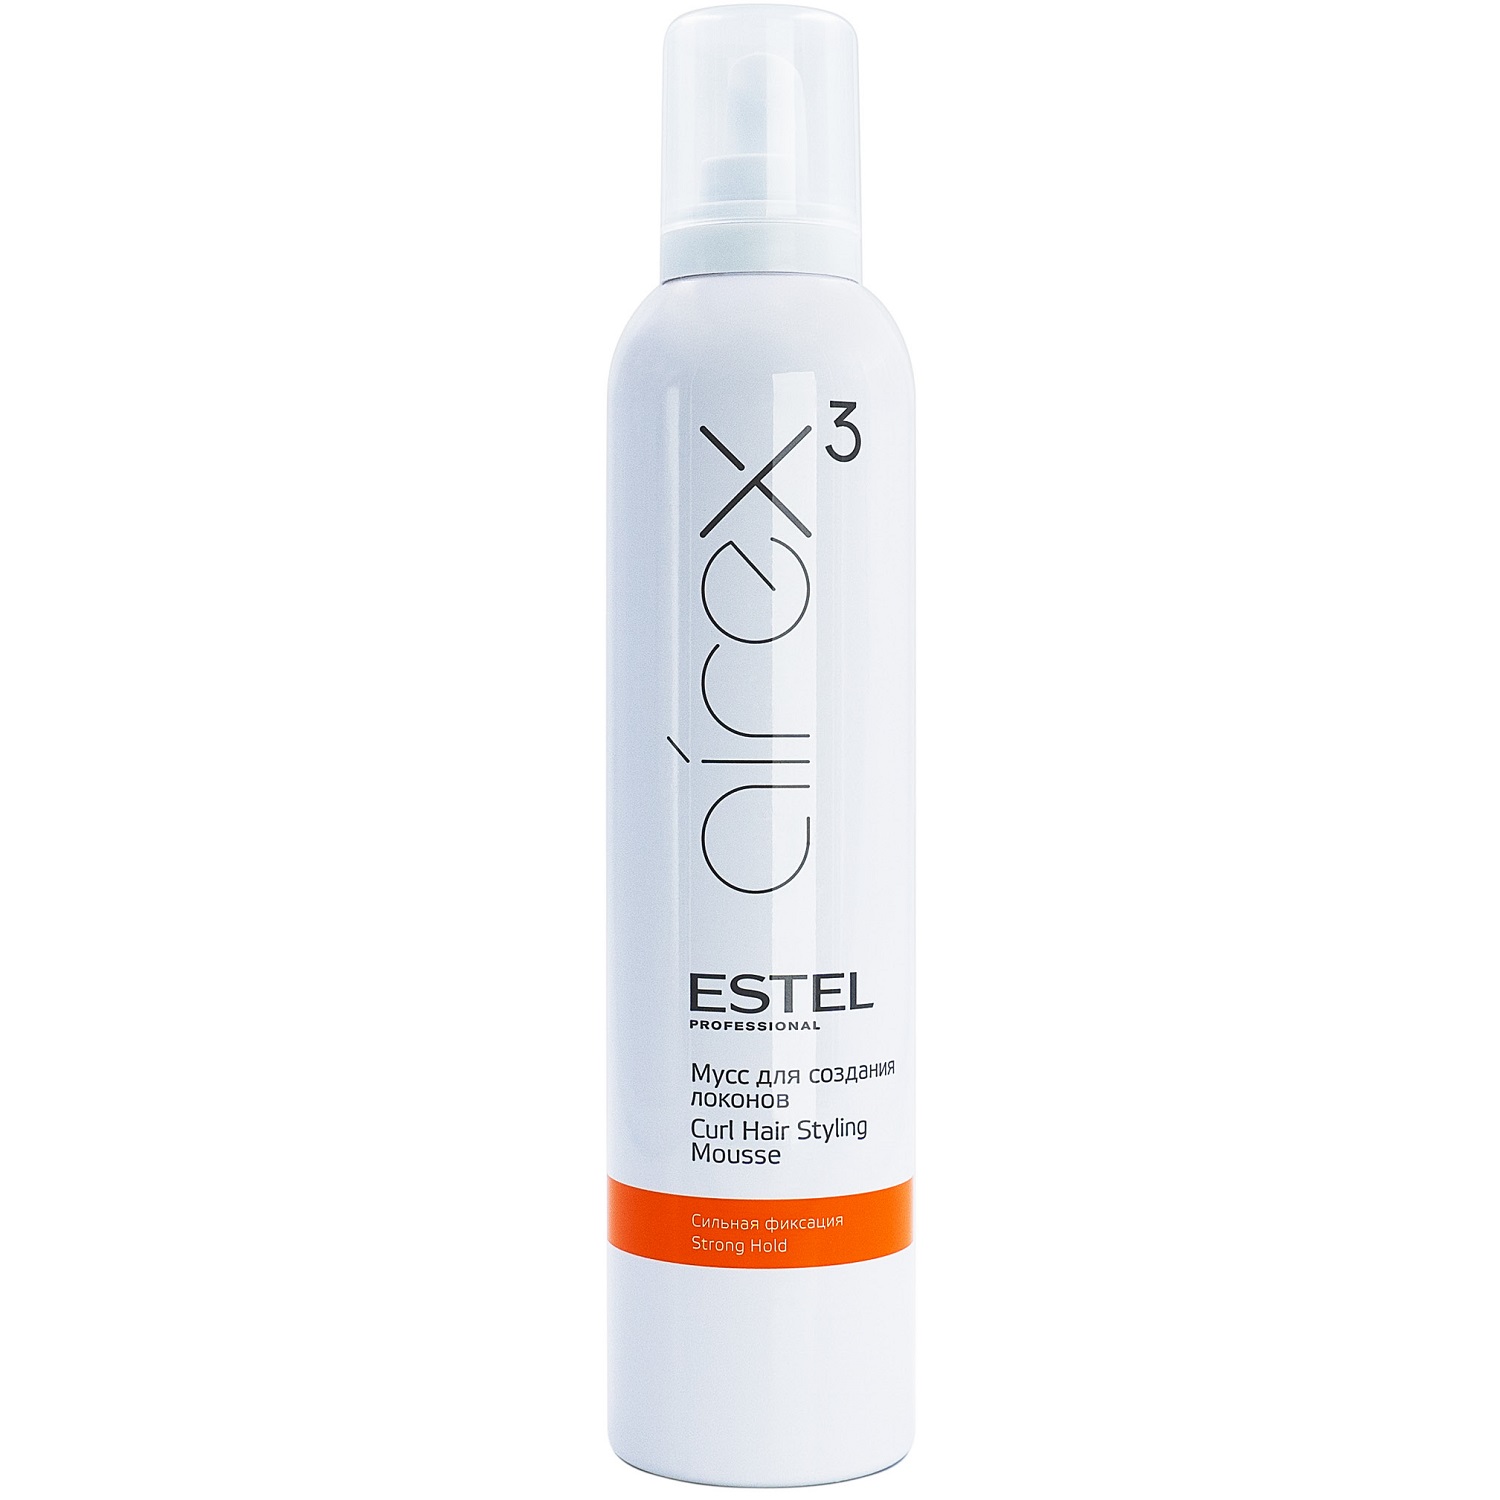 Estel Мусс для создания локонов сильная фиксация, 300 мл (Estel, Airex) estel глина для моделирования волос с матовым эффектом пластичная фиксация 2 65 мл estel airex